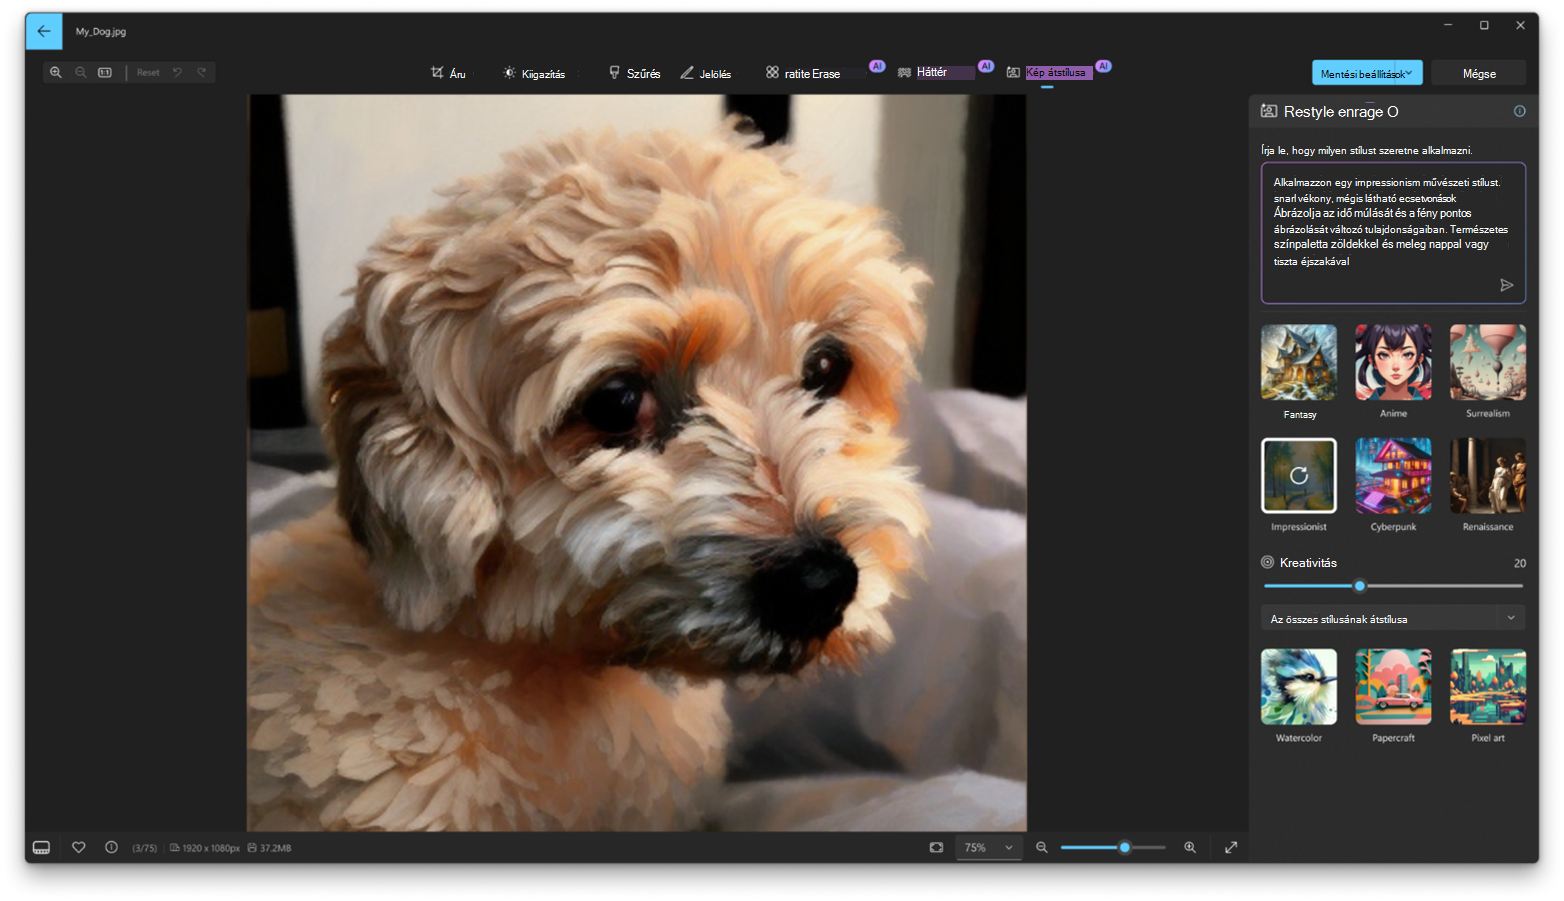 Képernyőkép a Windows Fényképek alkalmazásról az alkalmazásban megnyitott Restyle Image beállítással